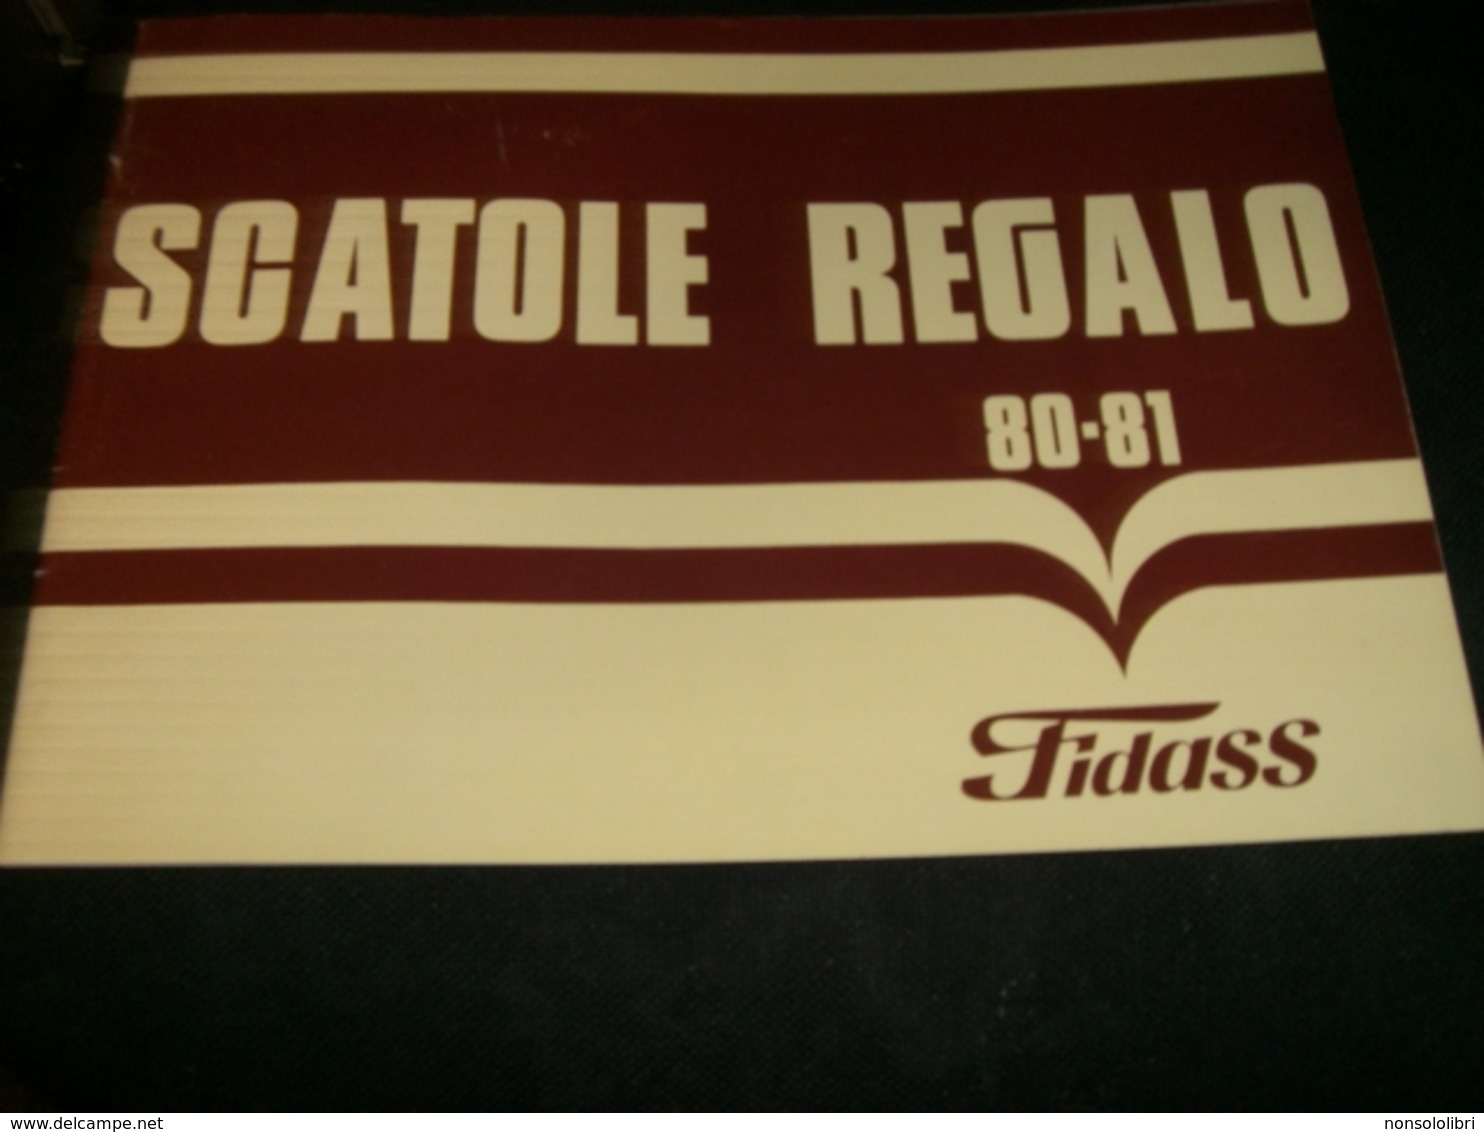 CATALOGO SCATOLE REGALO 80-81 FIDASS - Cioccolato